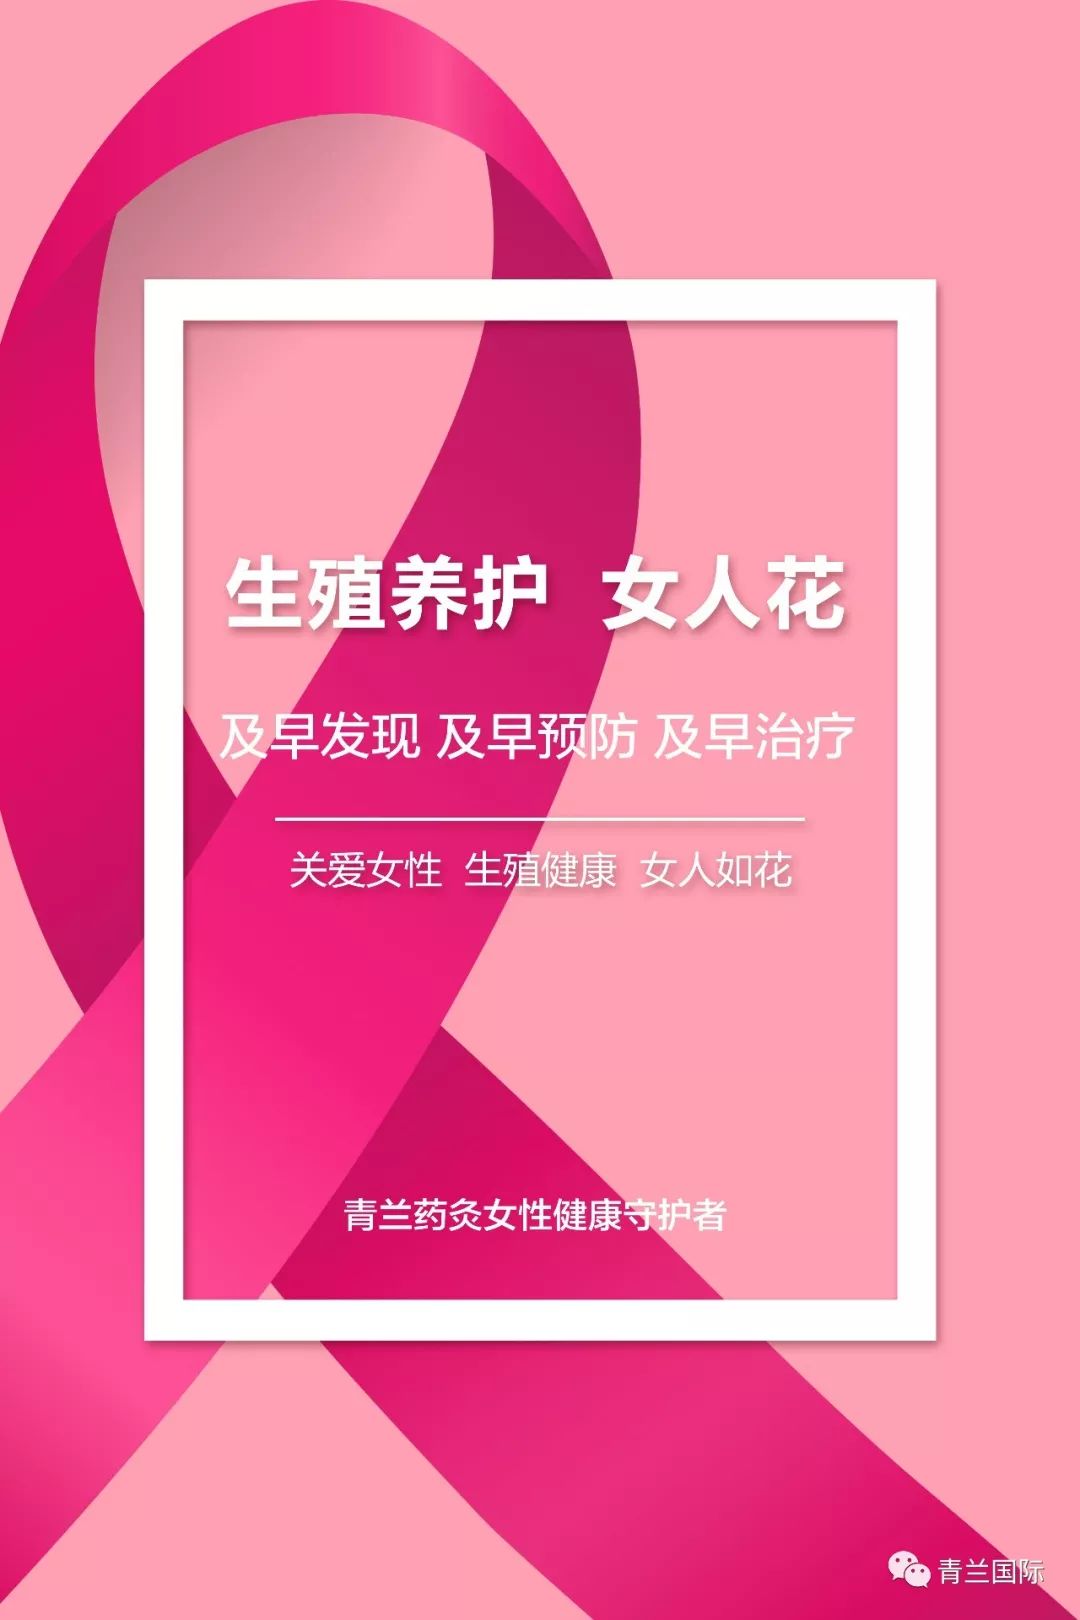 及早治疗粉红丝带乳腺癌公益组织,很多政要,明星参加出席粉蓝丝带